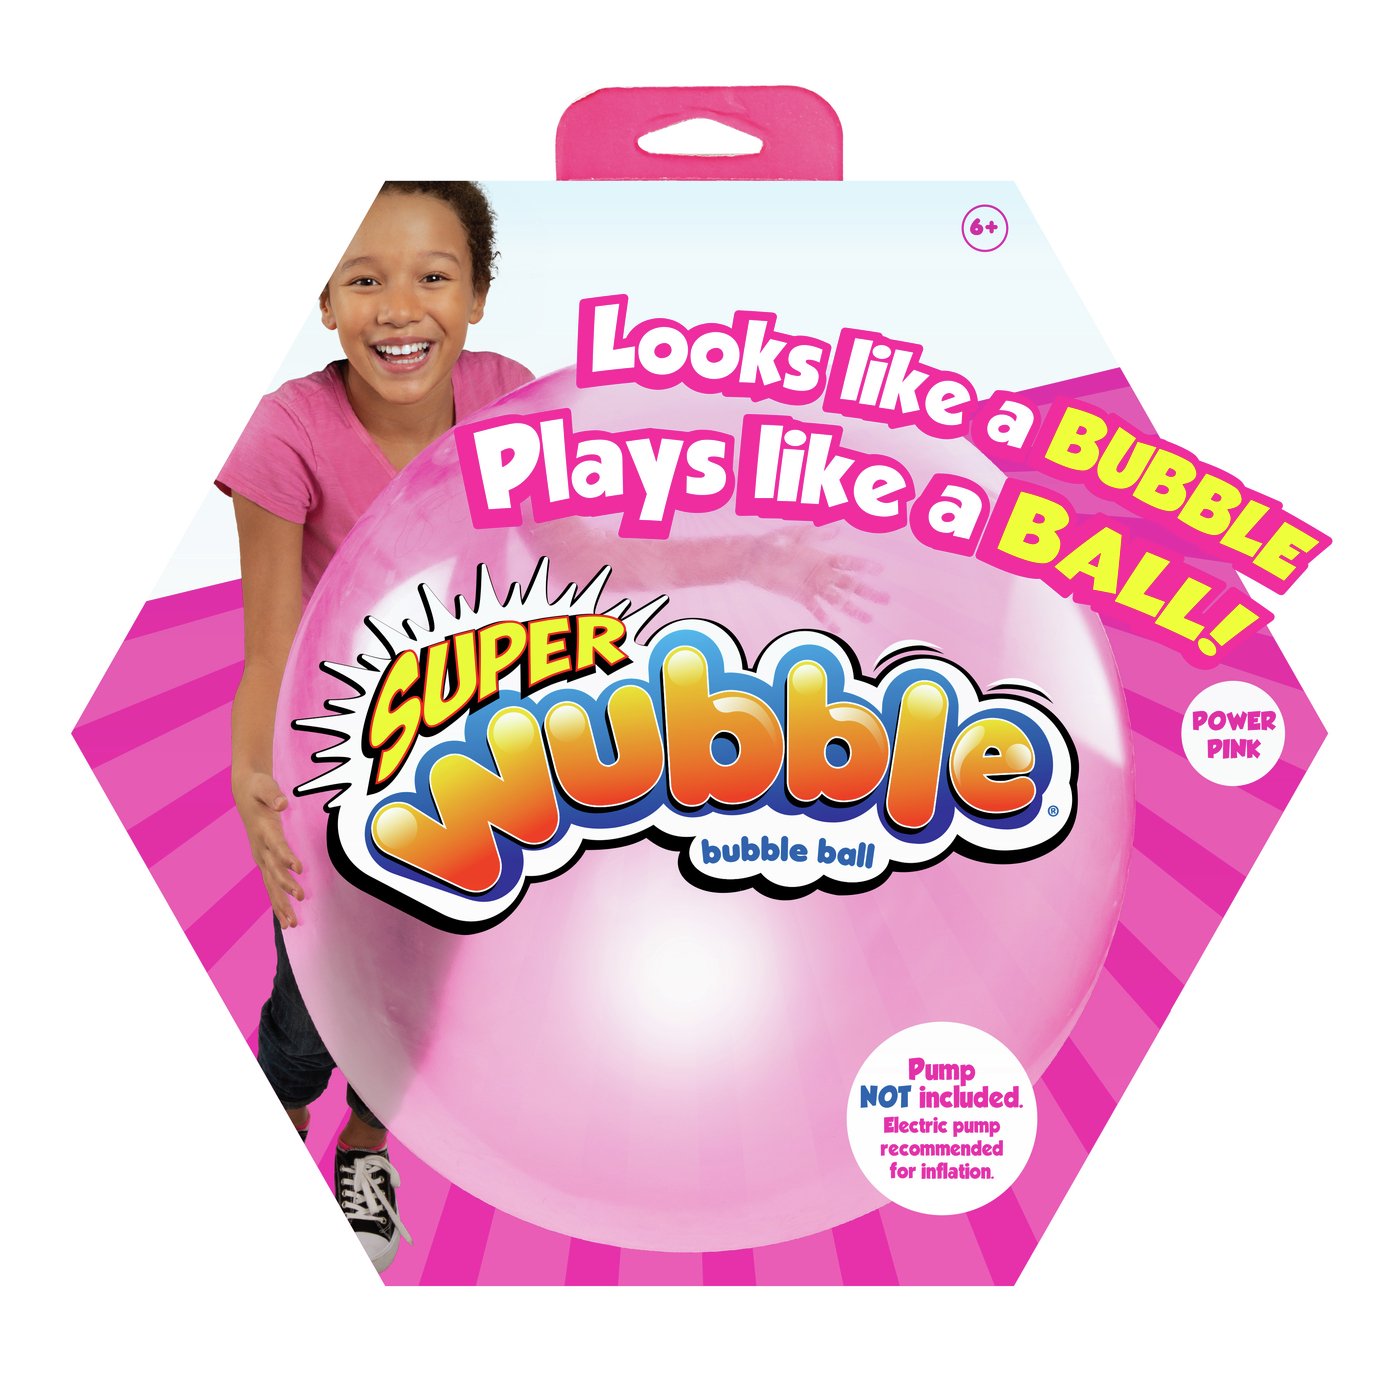 Super Wubble Bubble Ball Review